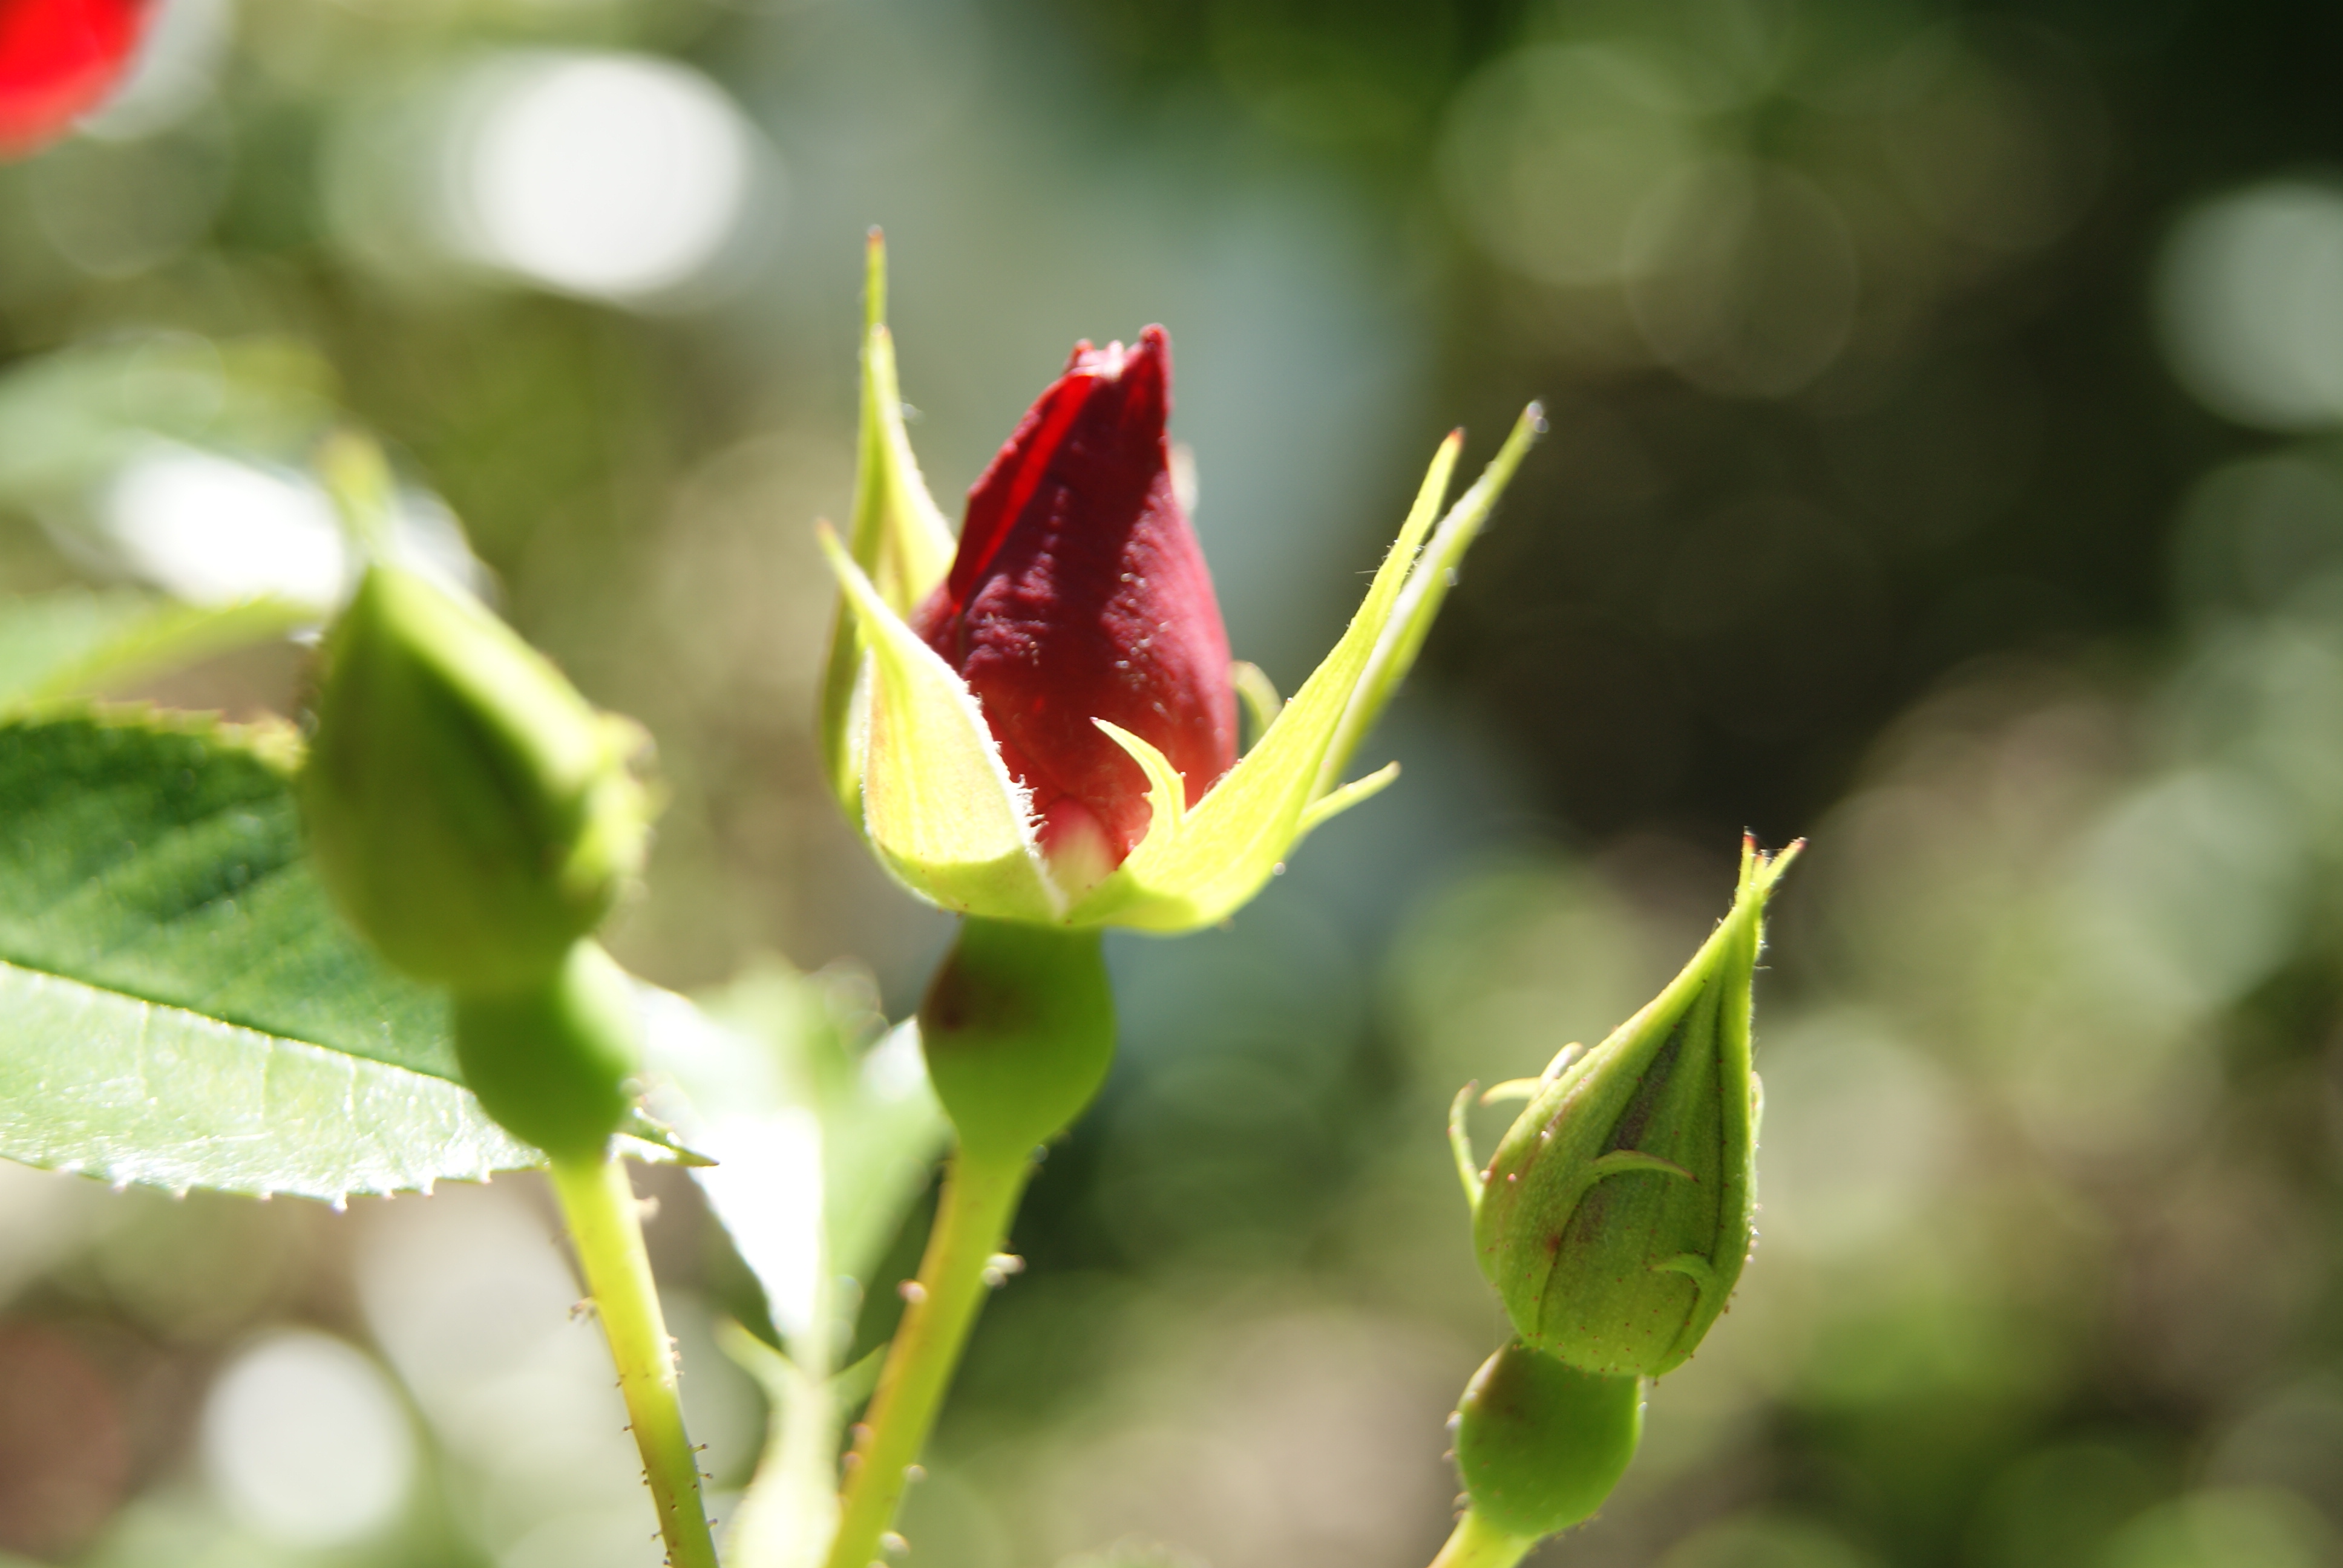 Rosebud Macro, Abstract, Natural, Plant, Petal, HQ Photo